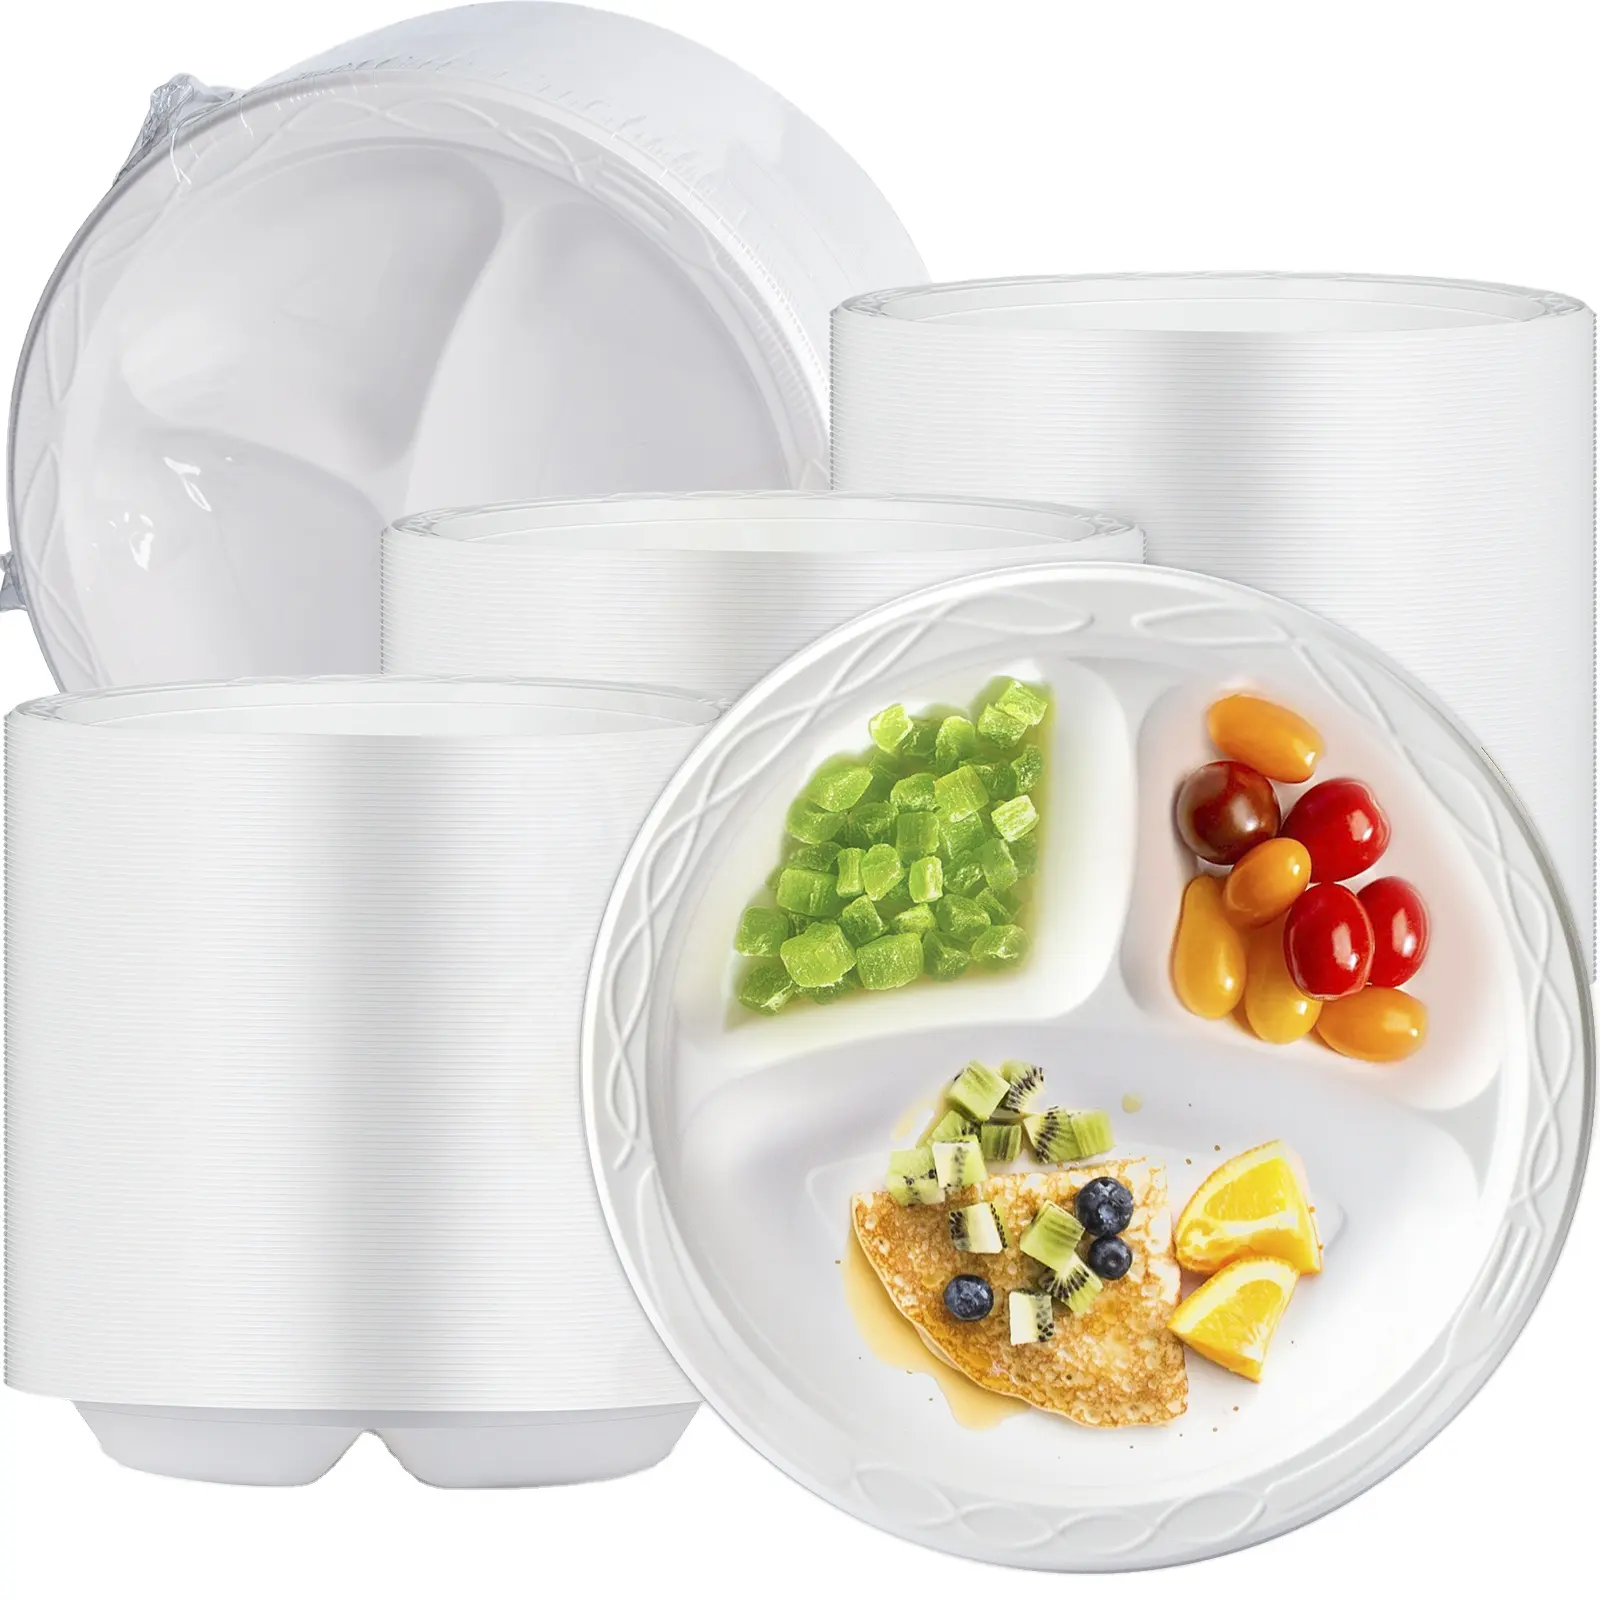 Biodegradable सफेद प्लास्टिक की प्लेटें Dishwasher माइक्रोवेव फ्रीजर सुरक्षित खाने के प्लेट, 9 इंच 3-डिब्बे डिस्पोजेबल प्लेटों